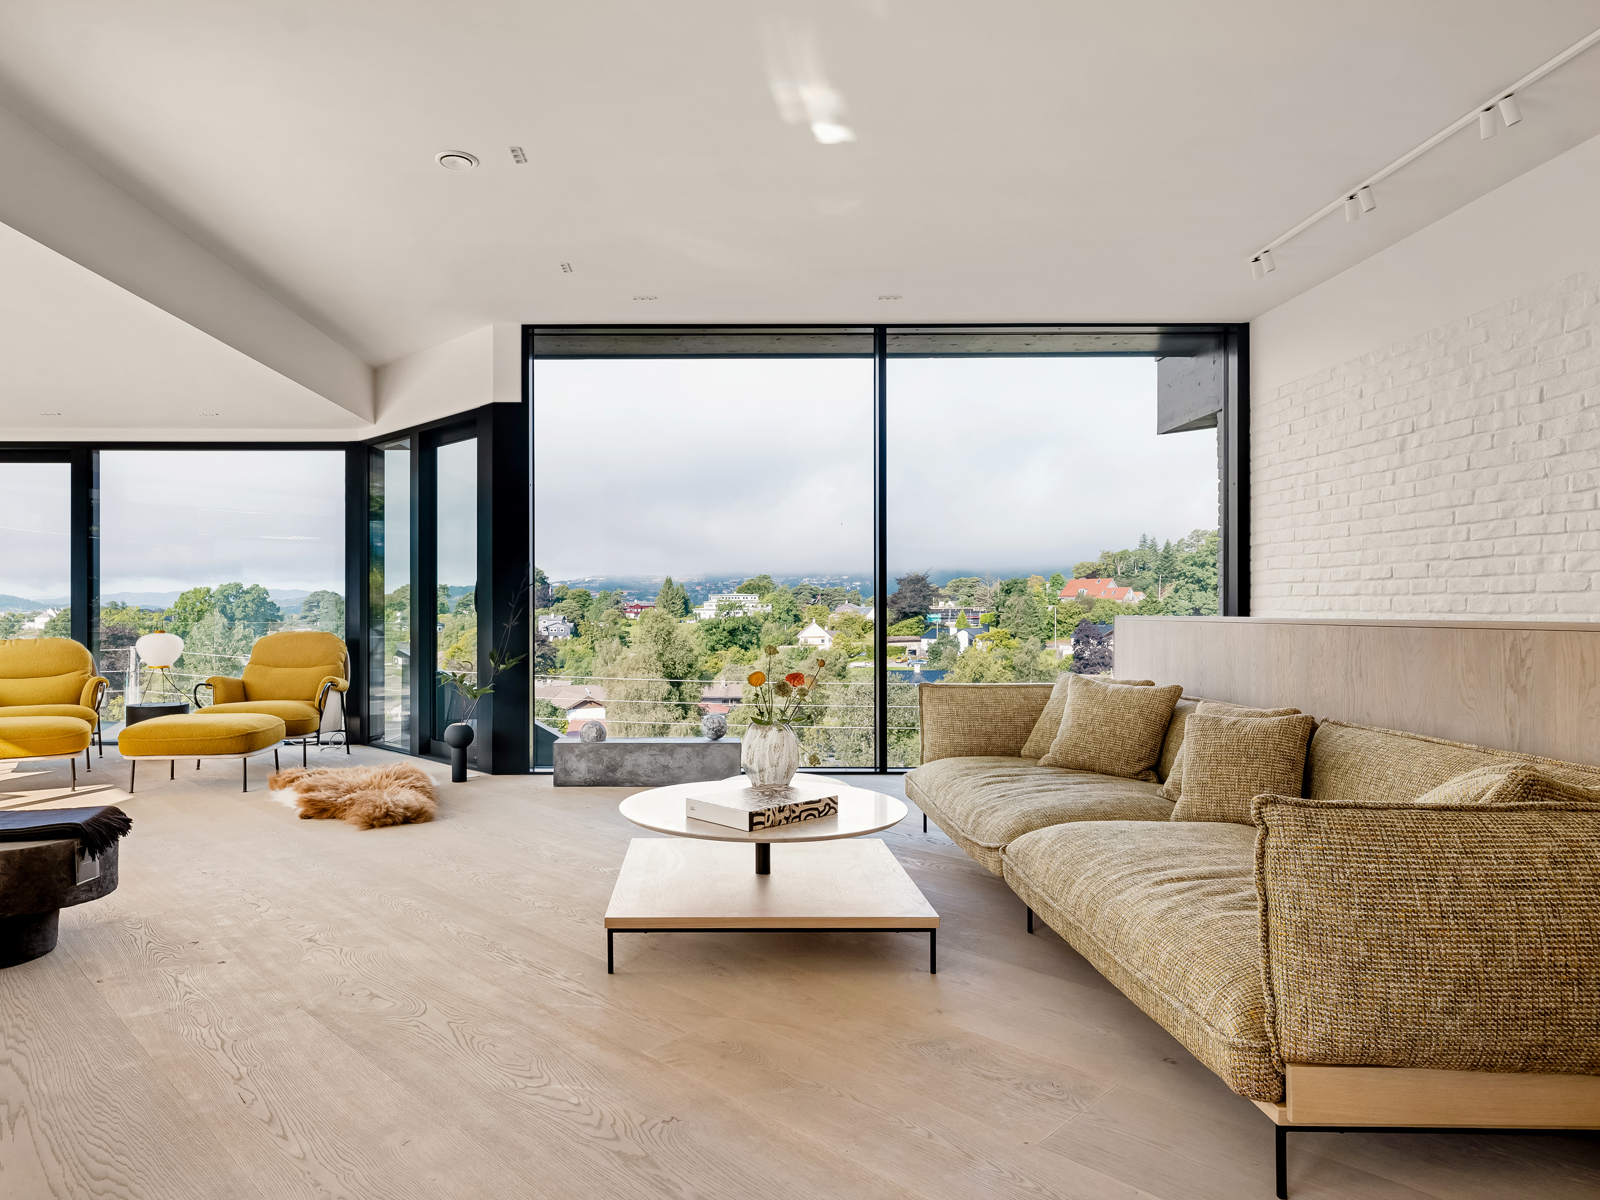 Interiør foto av stue med store glassflater i alle vegger, sofa, lenestoler i gult.